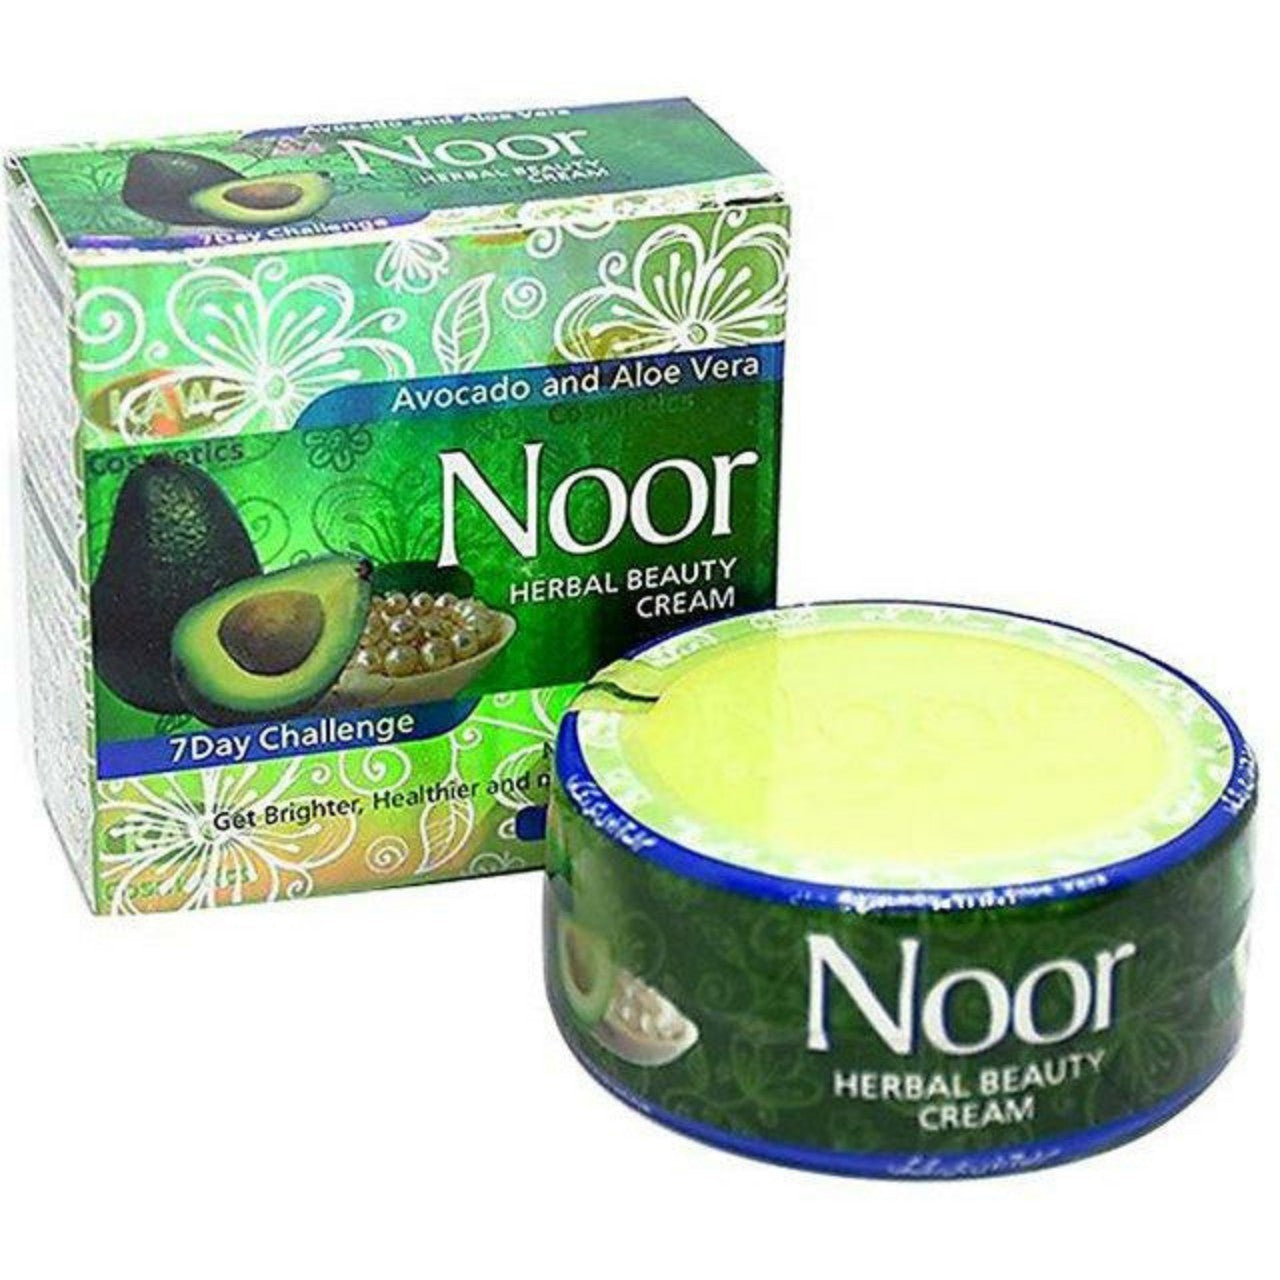 Noor Beauty Cream